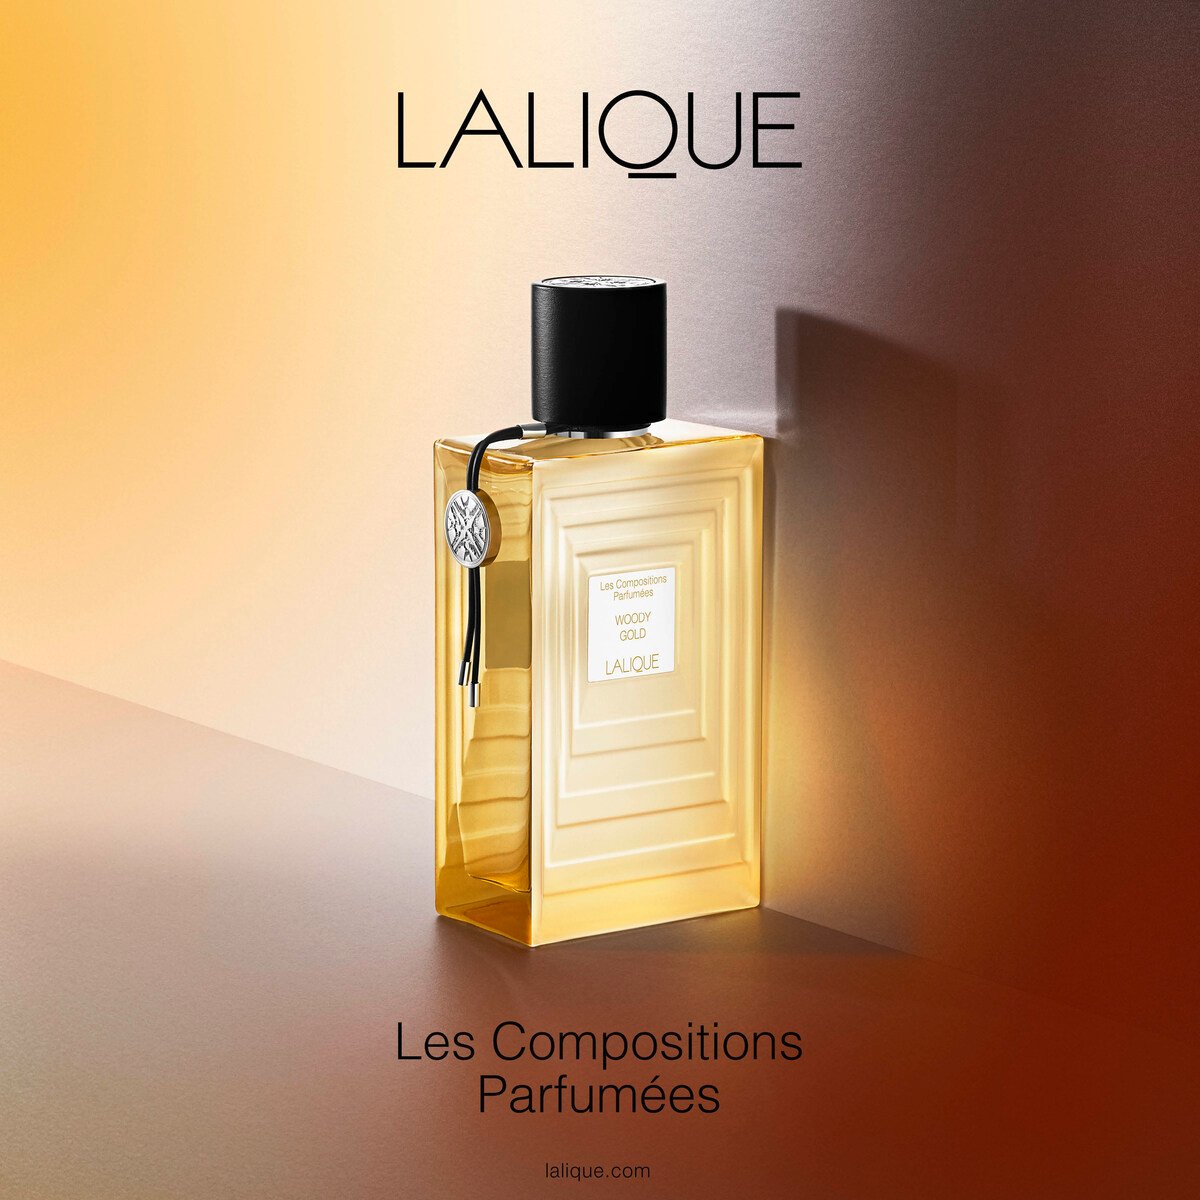 بررسی، مشاهده قیمت و خرید عطر (ادکلن) لالیک وودی گلد 2020 طلایی Lalique Woody Gold 2020 اصل